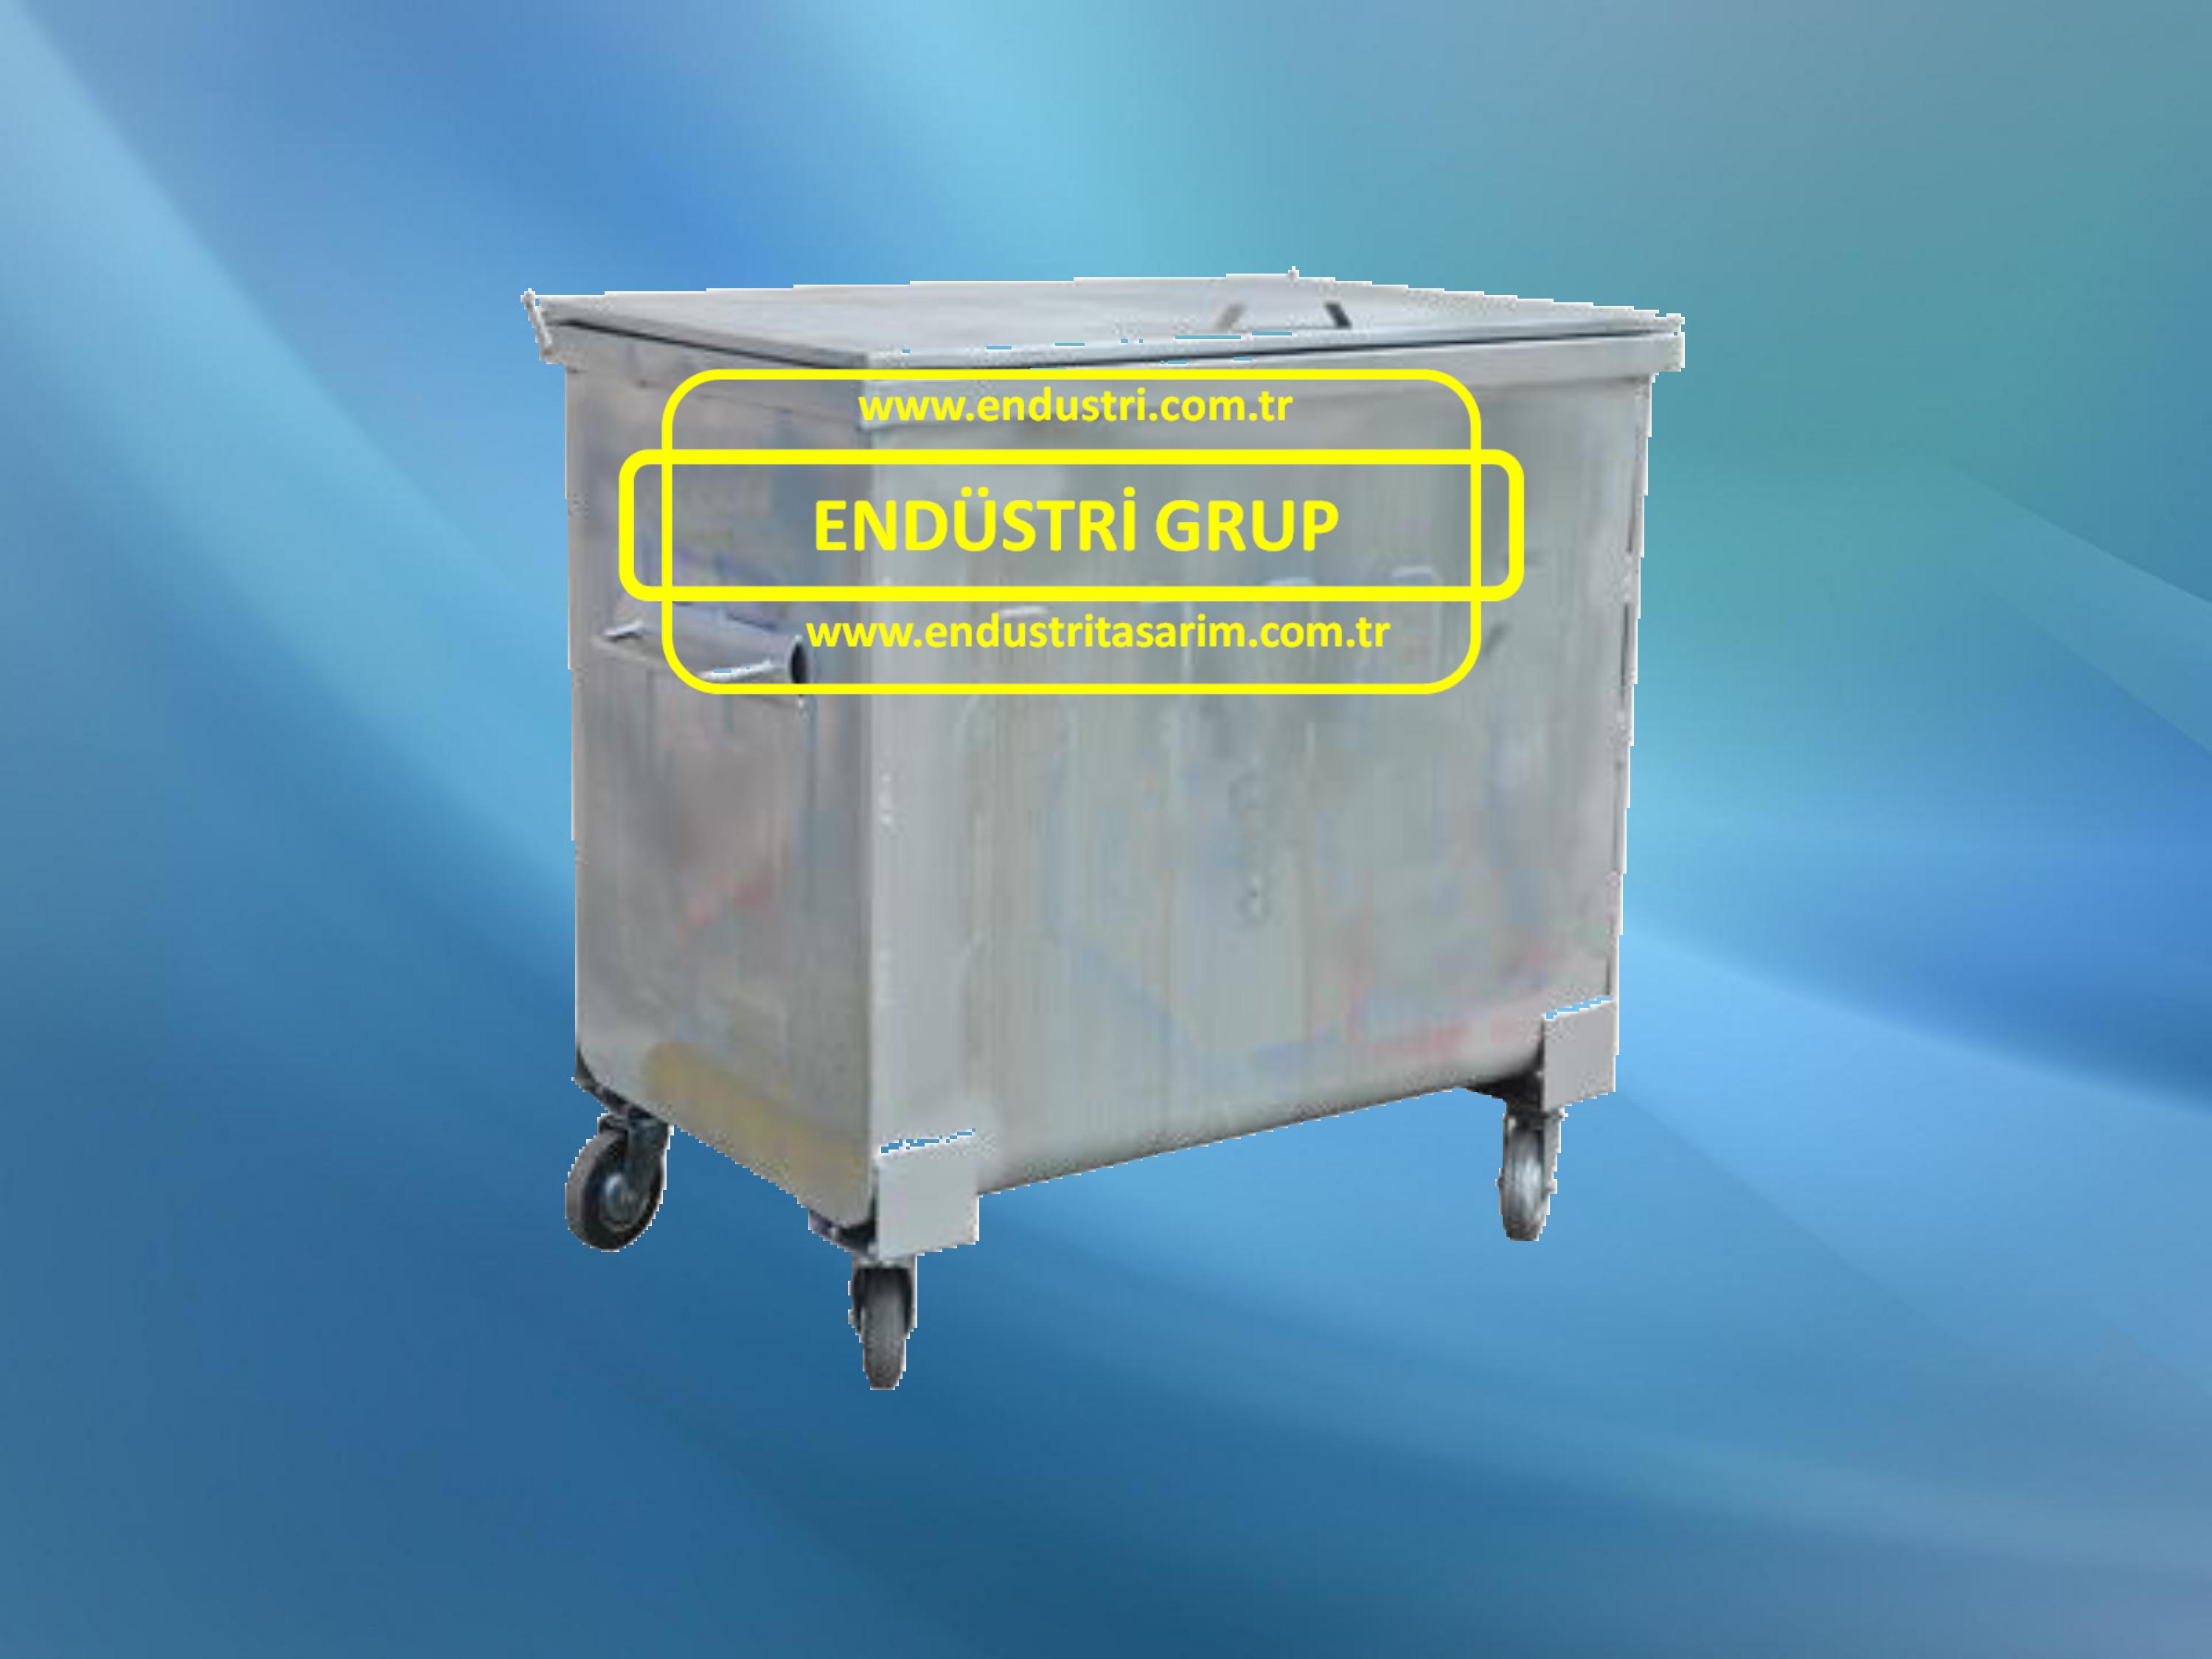 Sicak-daldirma-galvaniz-metal-cop-konteyneri-kovasi-kutusu-plastik-kovalari-konteynerleri-fiyati-fiyatlari-imalati